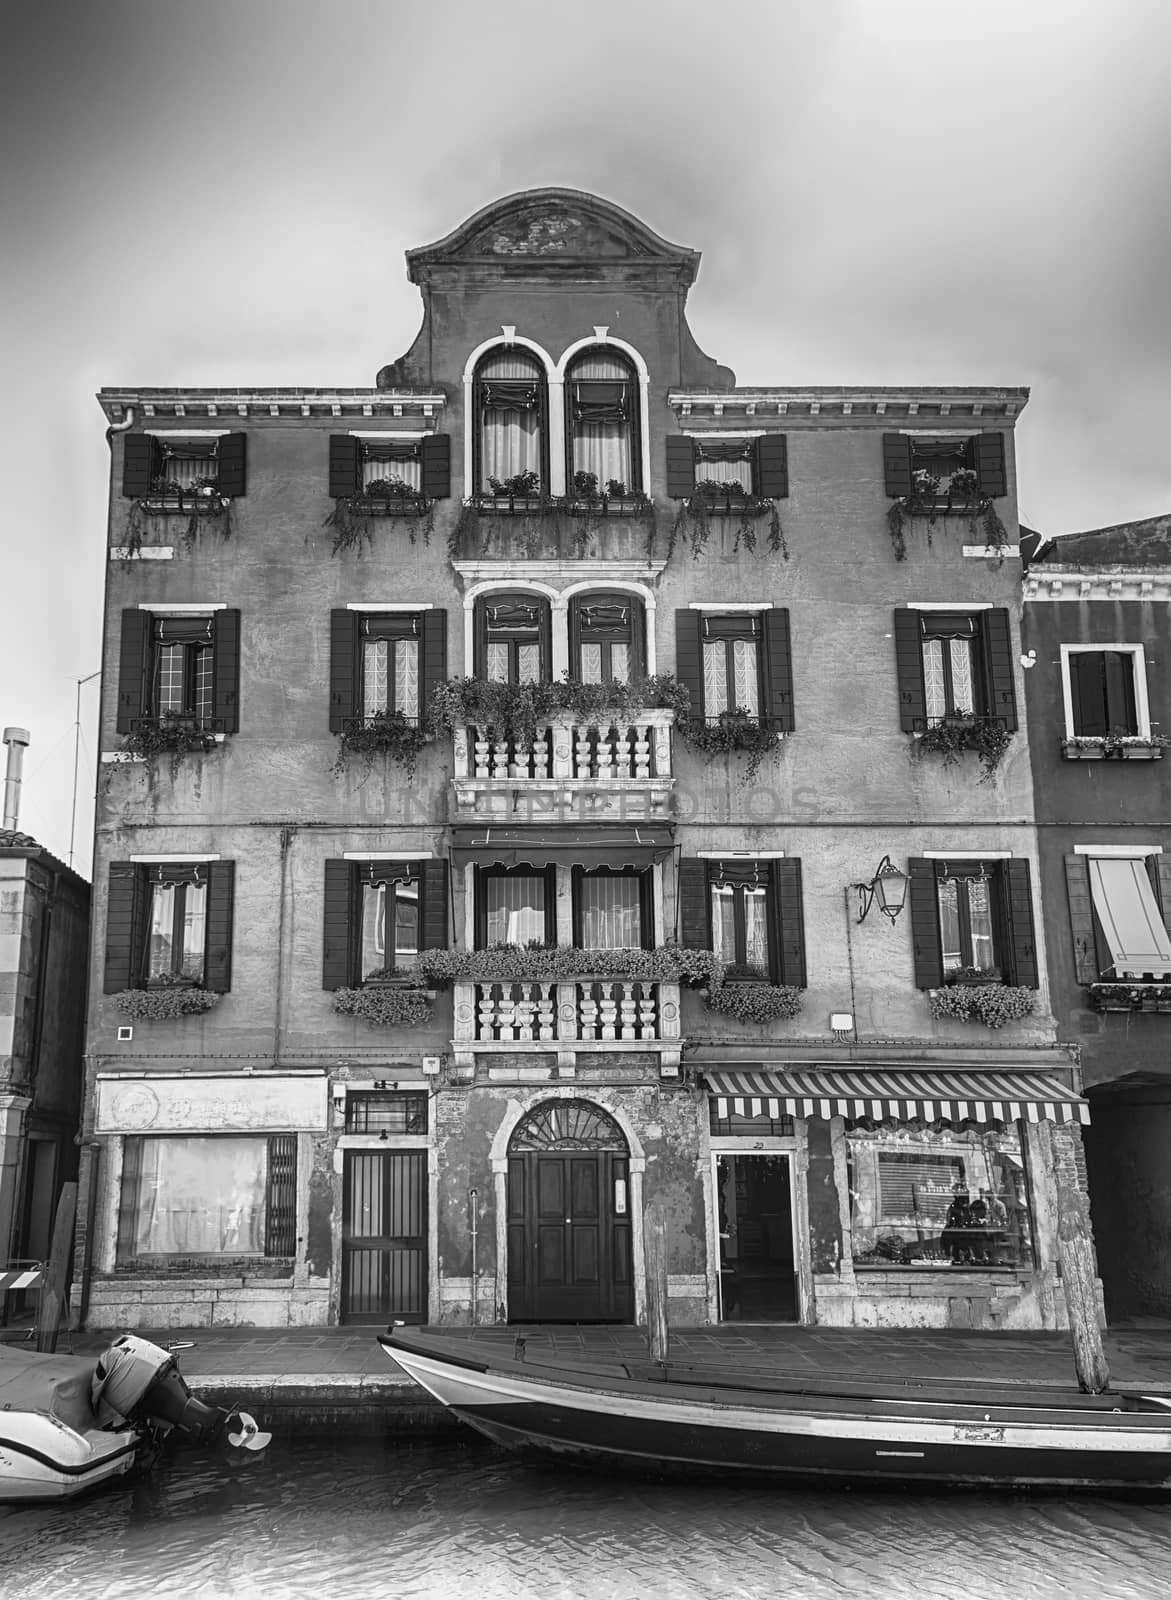 Scenic architecture in the city center of Murano, Venice, Italy by marcorubino